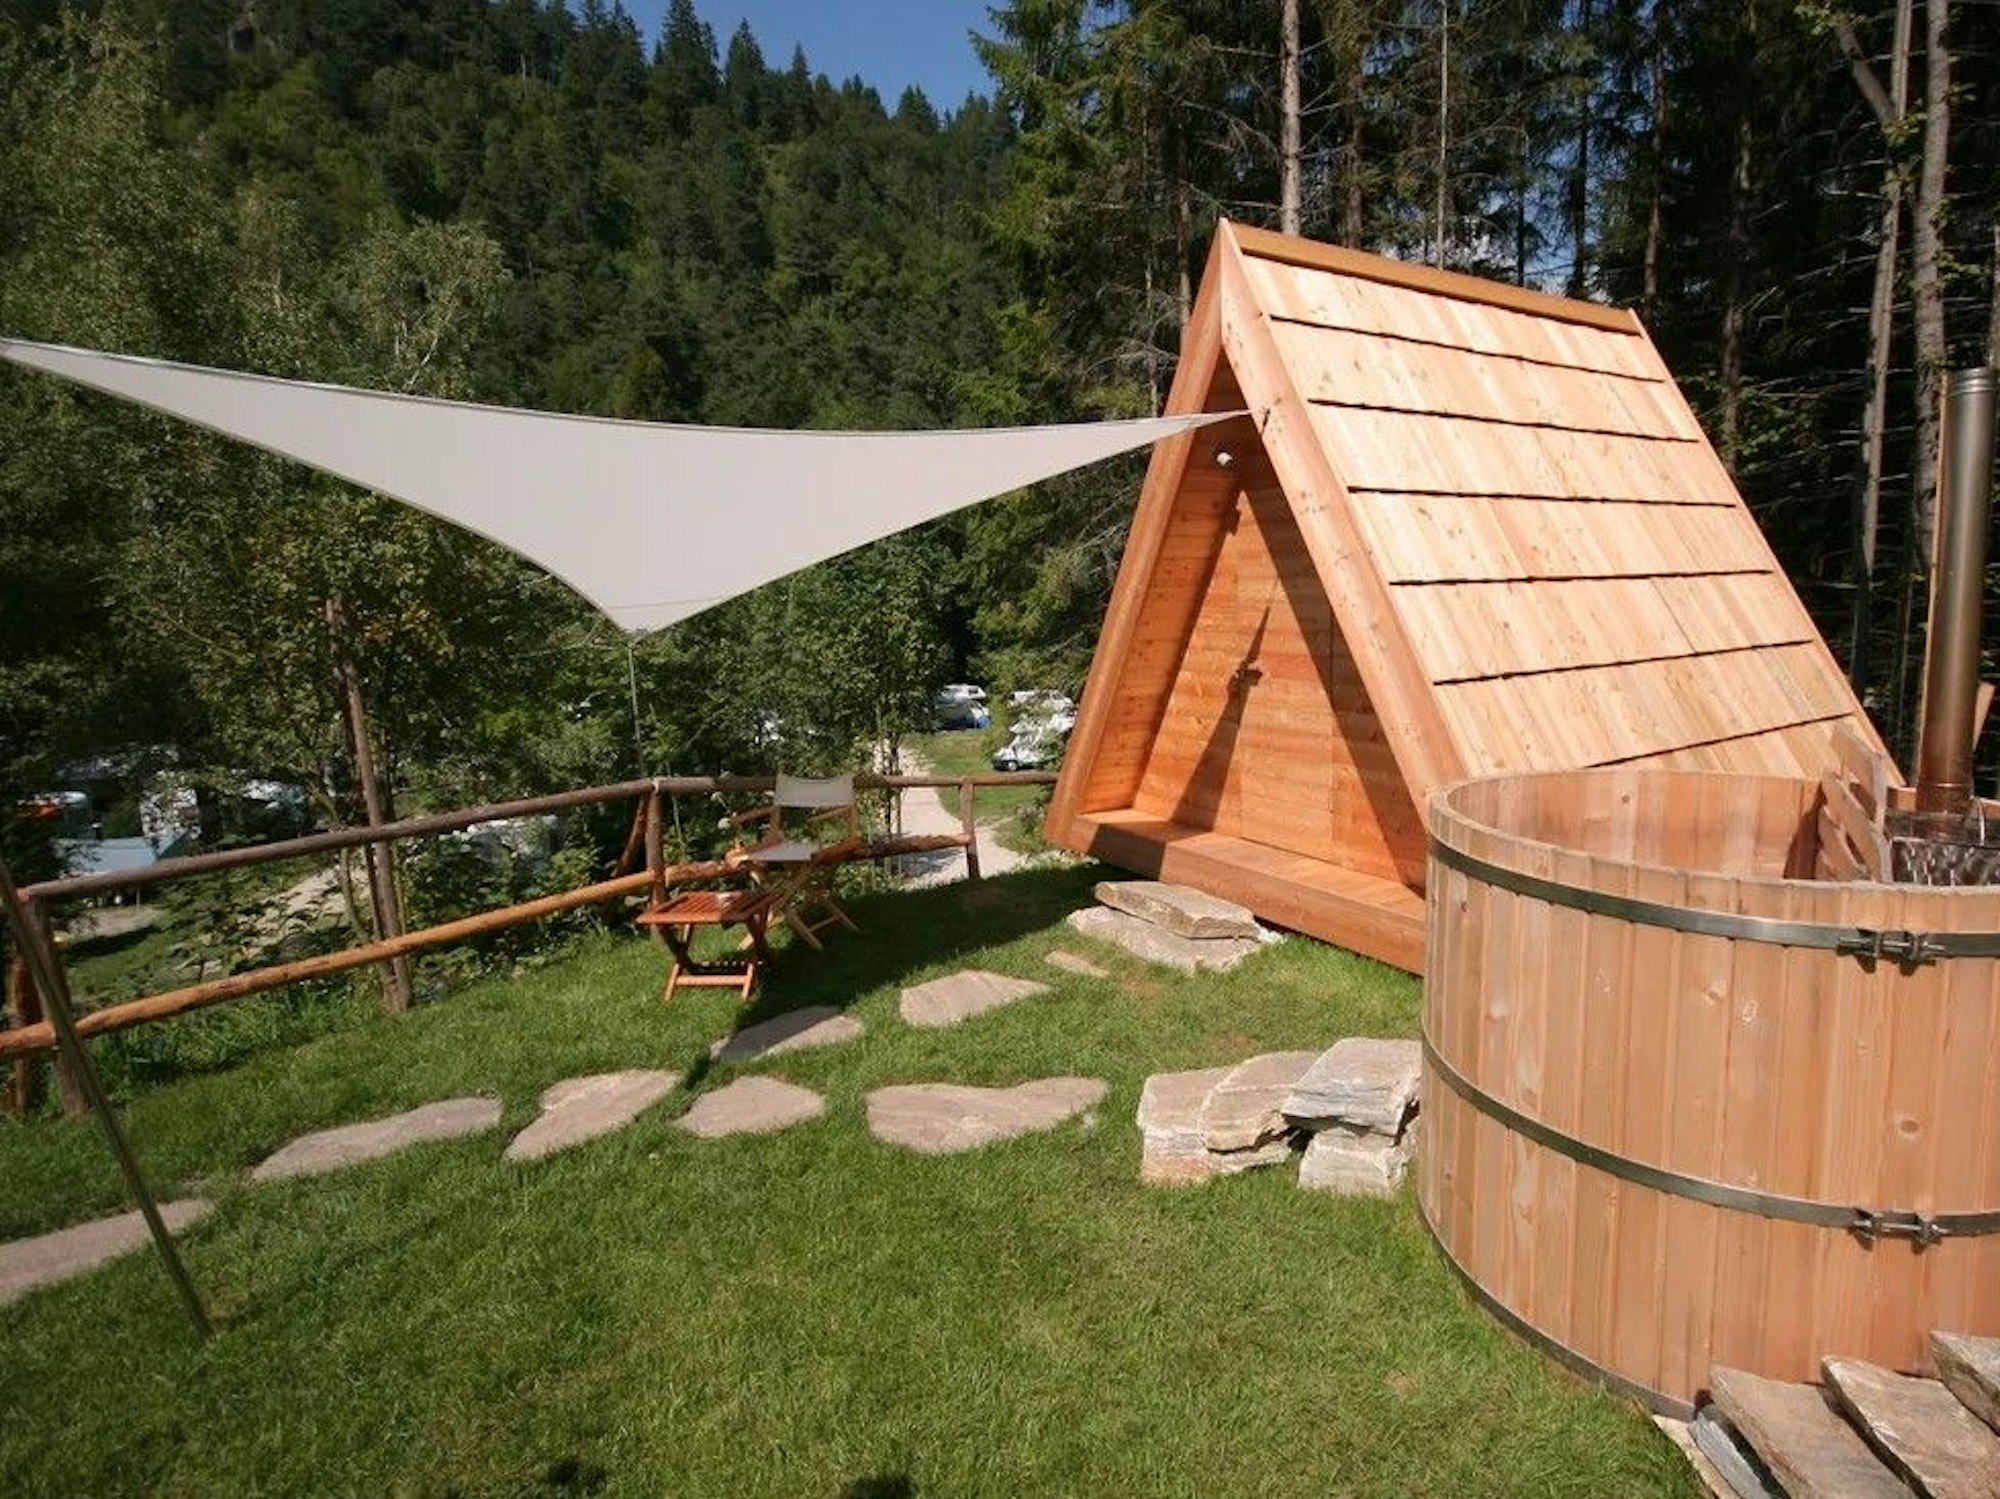 Blick auf einen Teil des Platzes „Camping Bled“ in Slowenien in den Julischen Alpen am See.